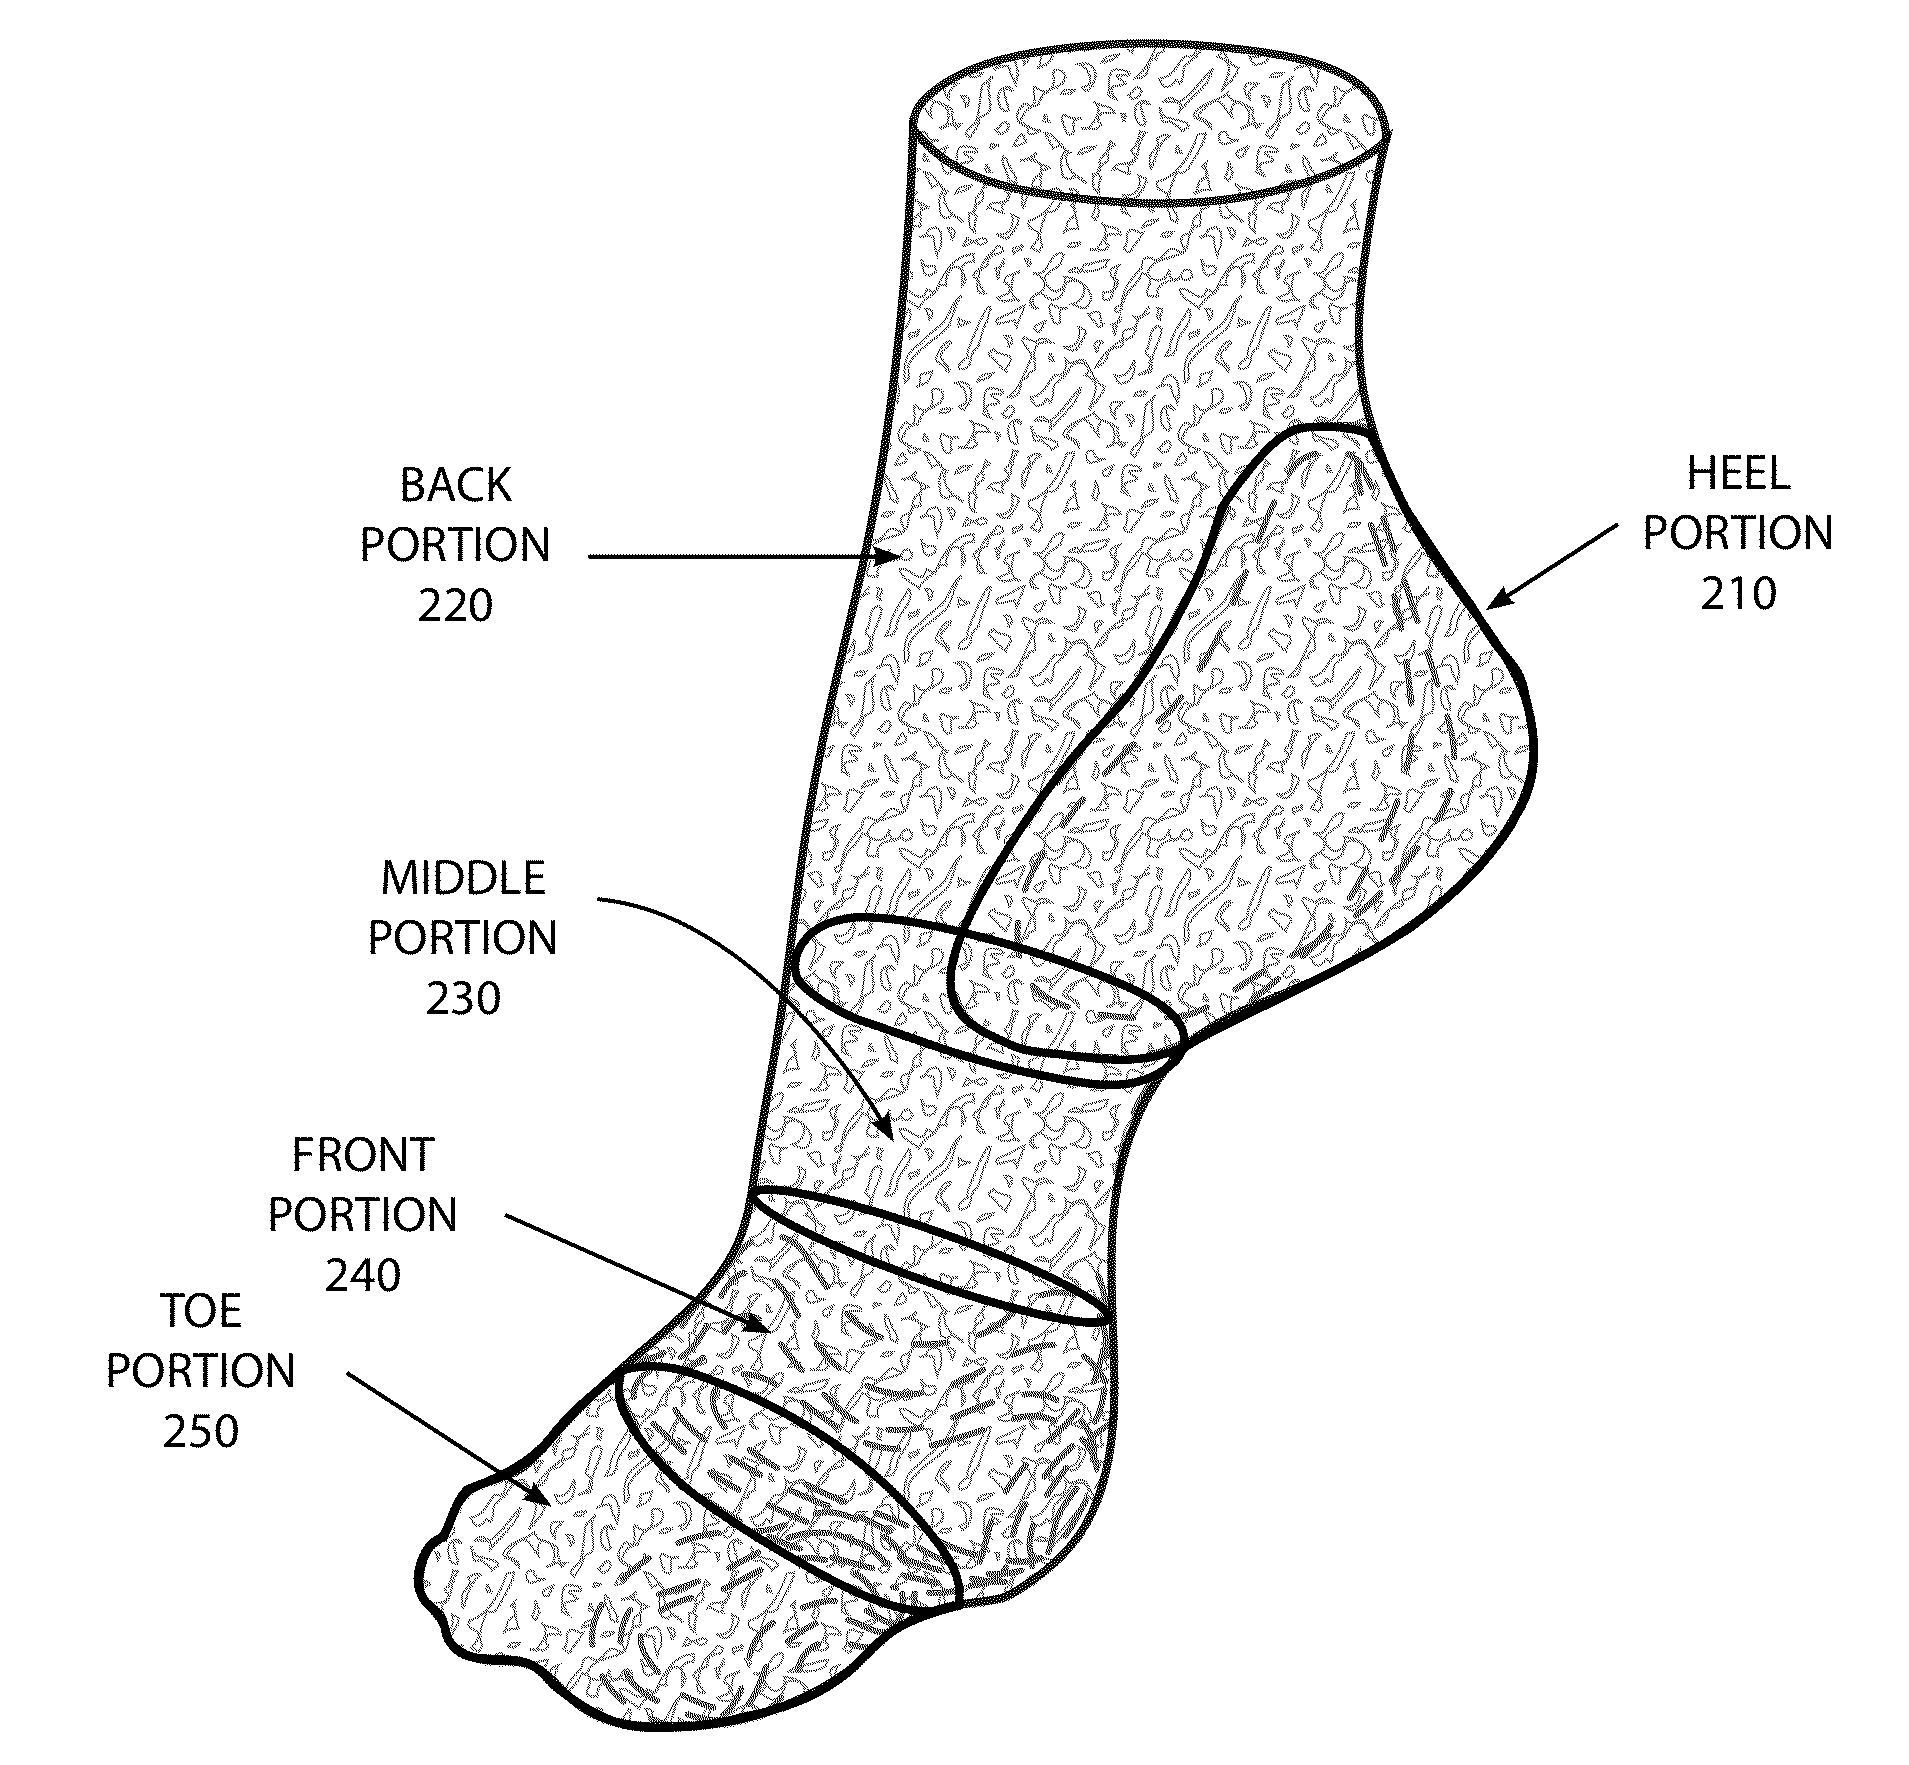 Foot membrane